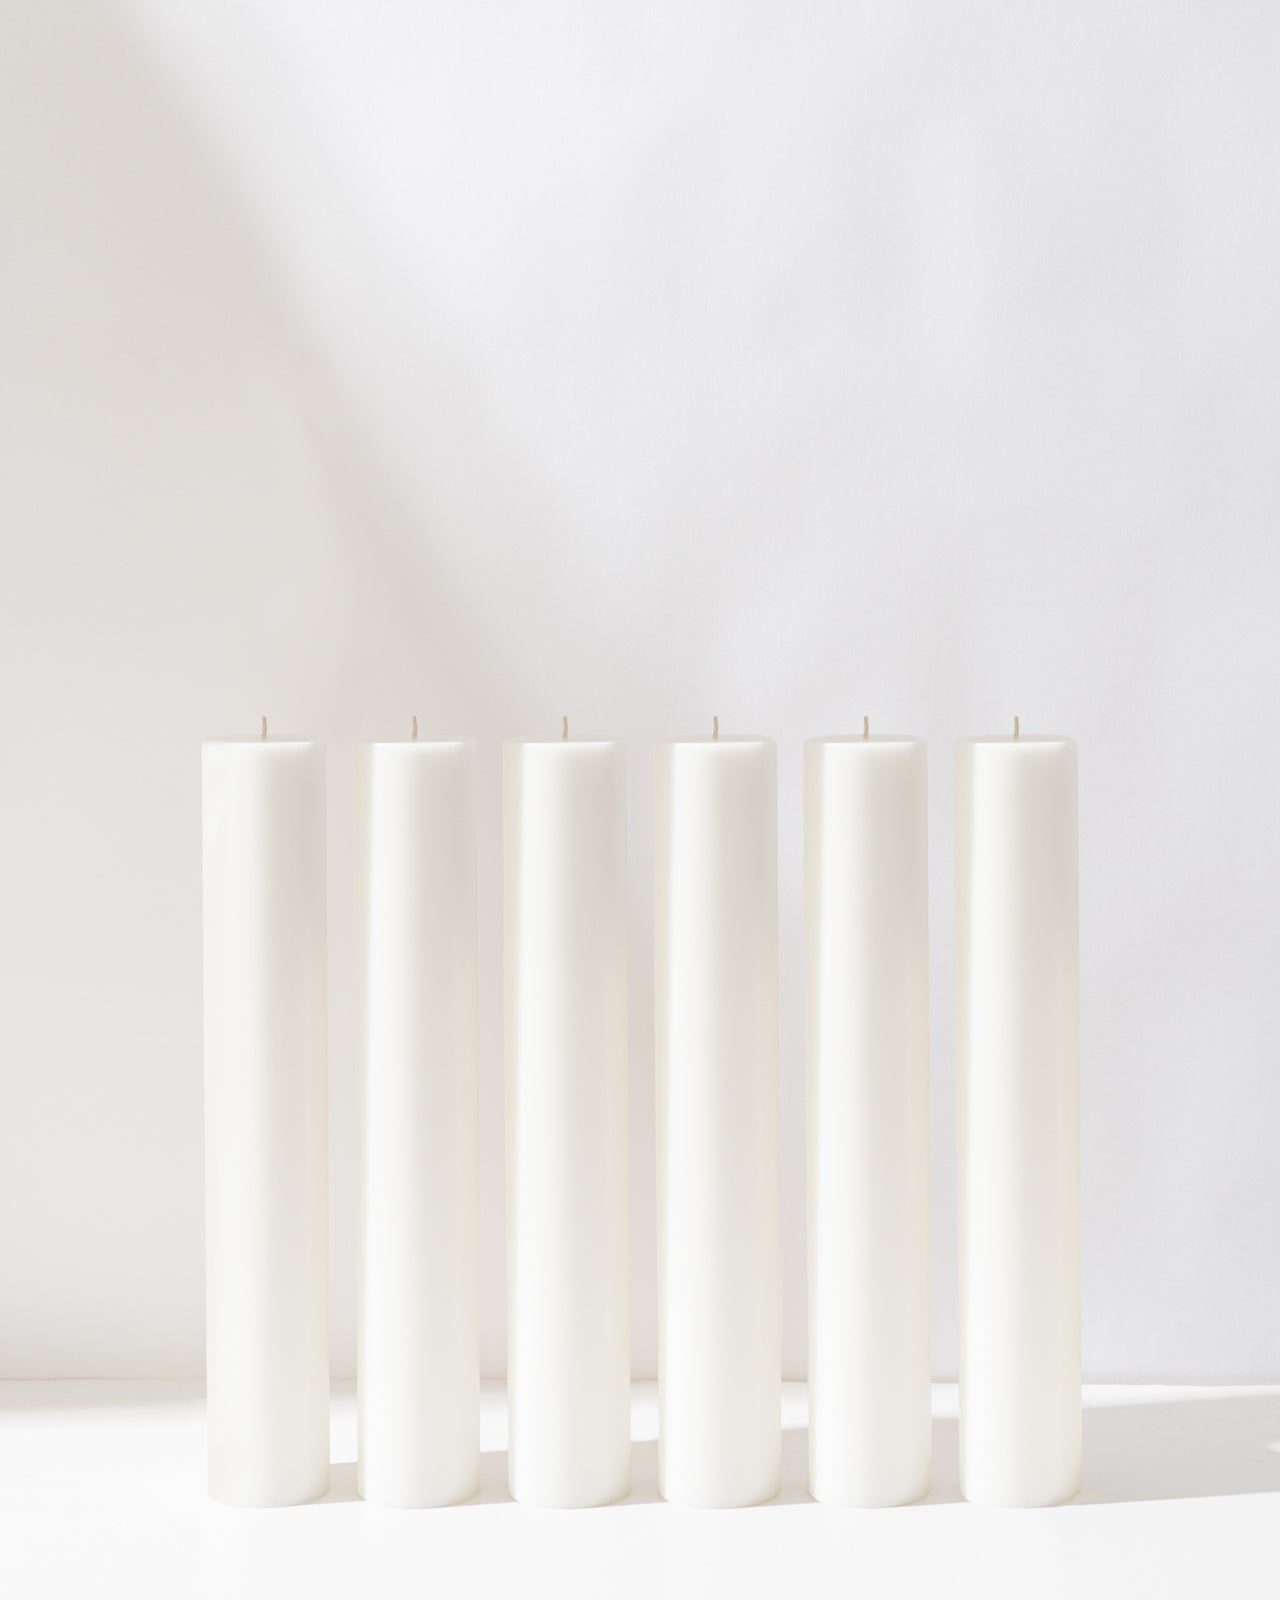 37cm Pillar Bundle (10 candles)